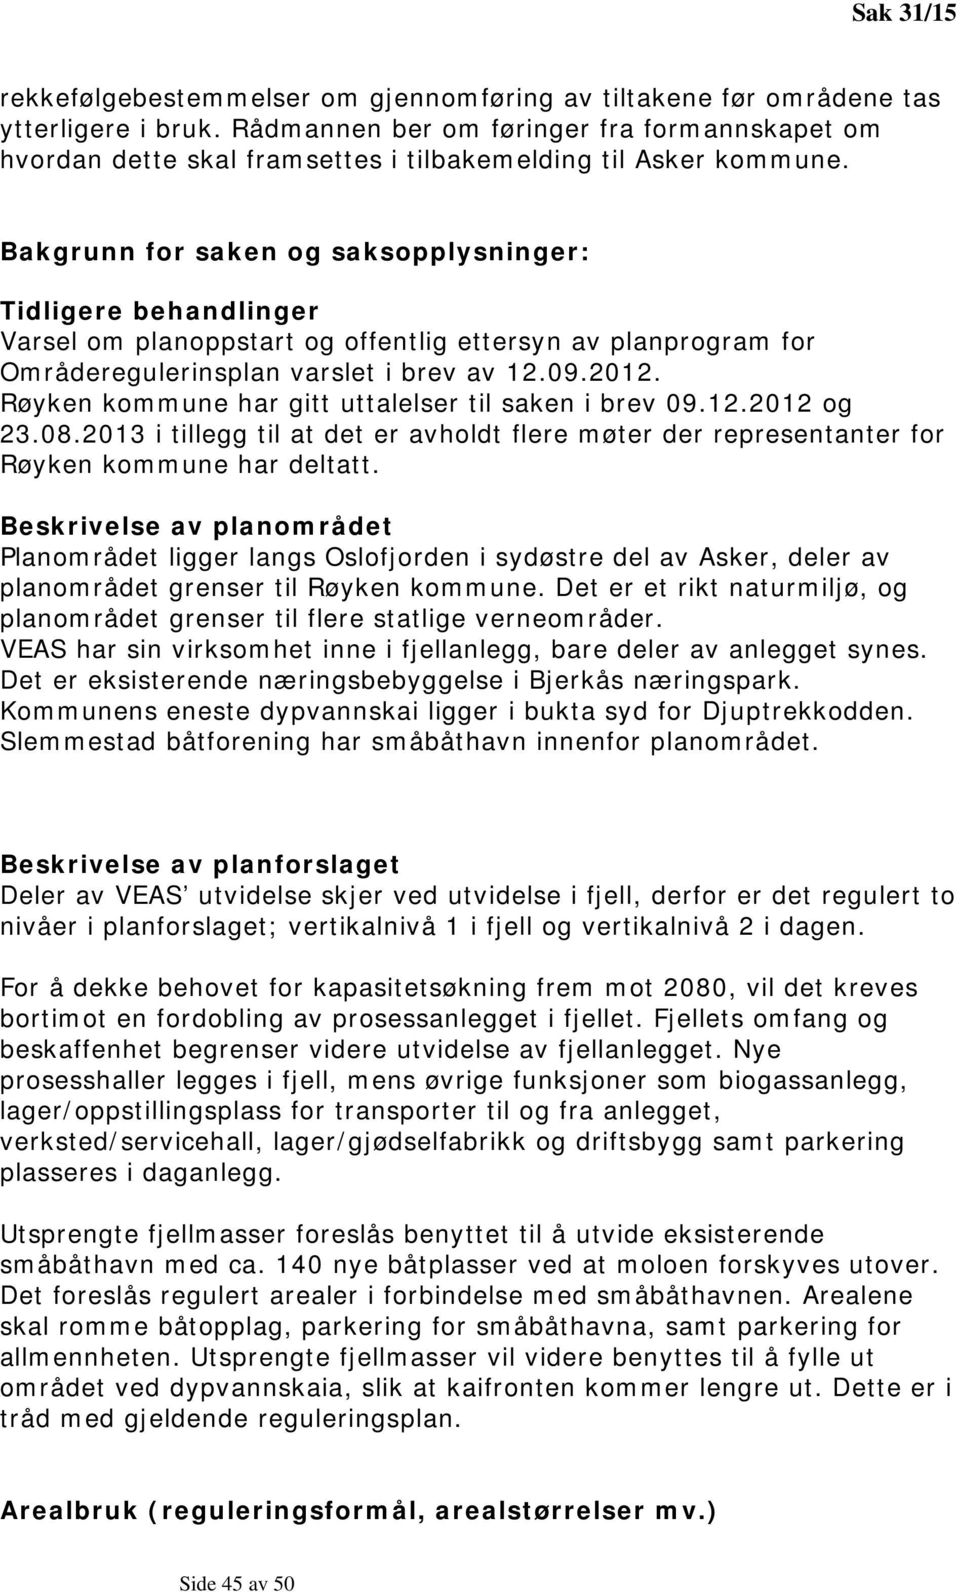 Bakgrunn for saken og saksopplysninger: Tidligere behandlinger Varsel om planoppstart og offentlig ettersyn av planprogram for Områderegulerinsplan varslet i brev av 12.09.2012.